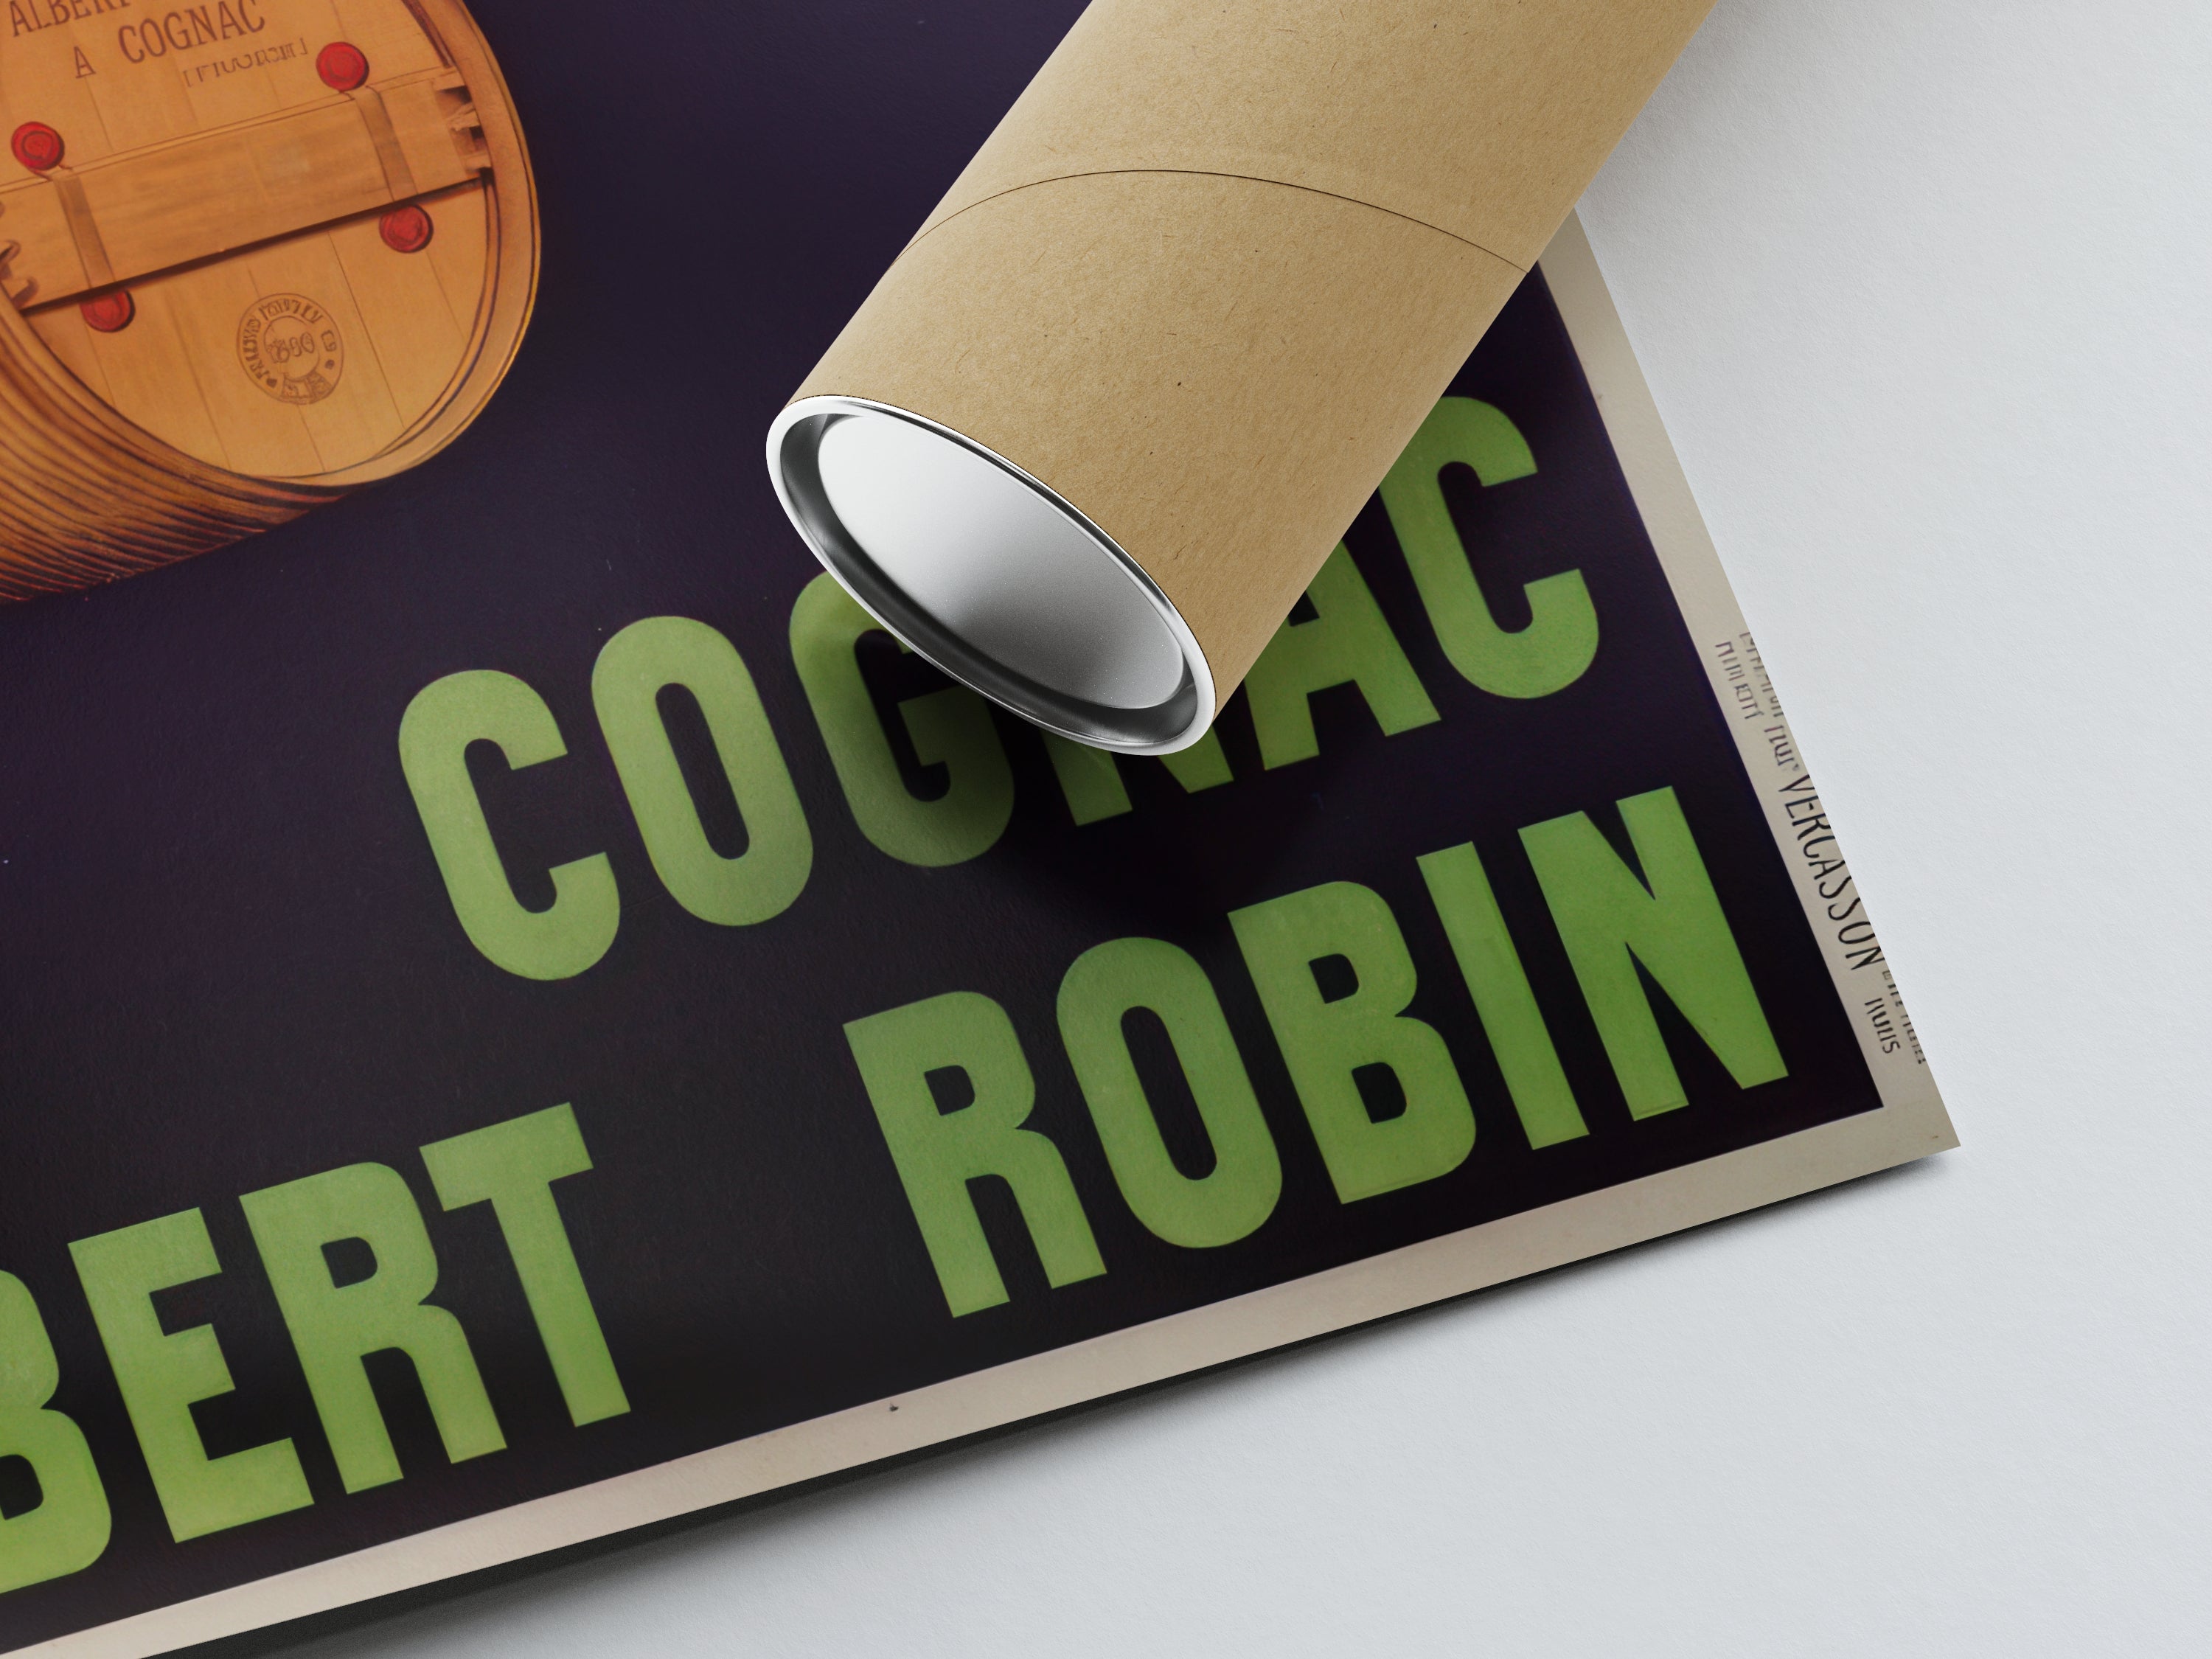 Affiche alcool vintage "Cognac Albert Robin" - Leonetto Cappiello - Haute Définition